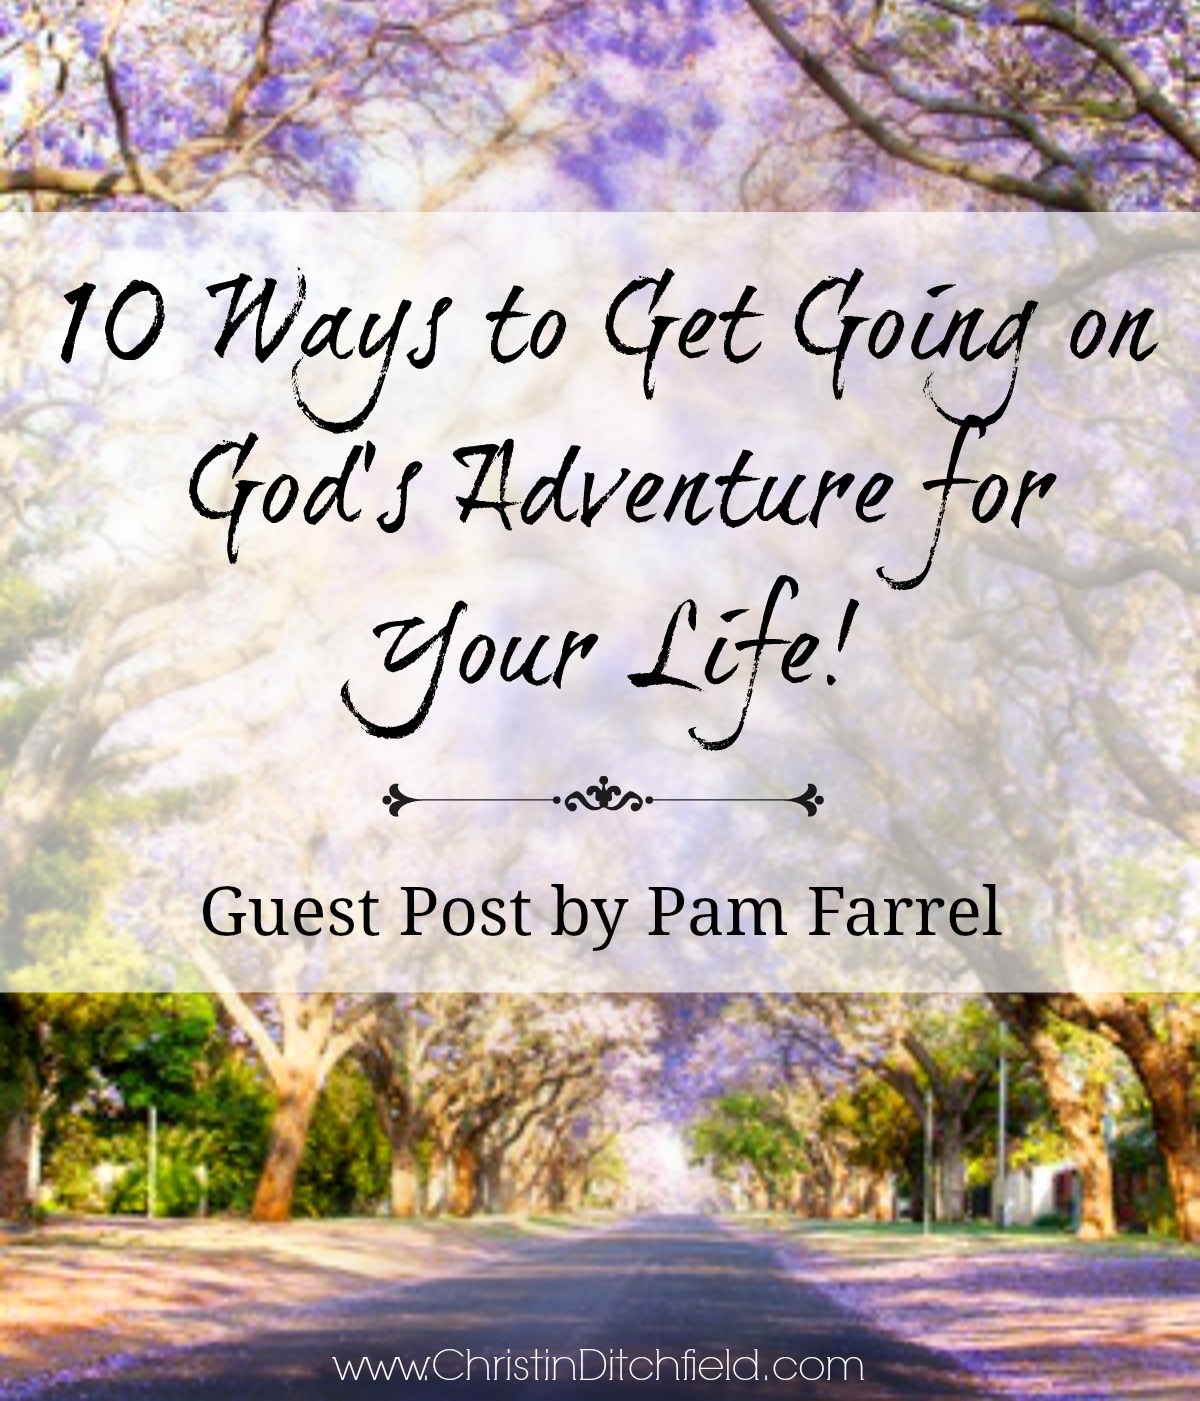 Ten Ways to Get Going